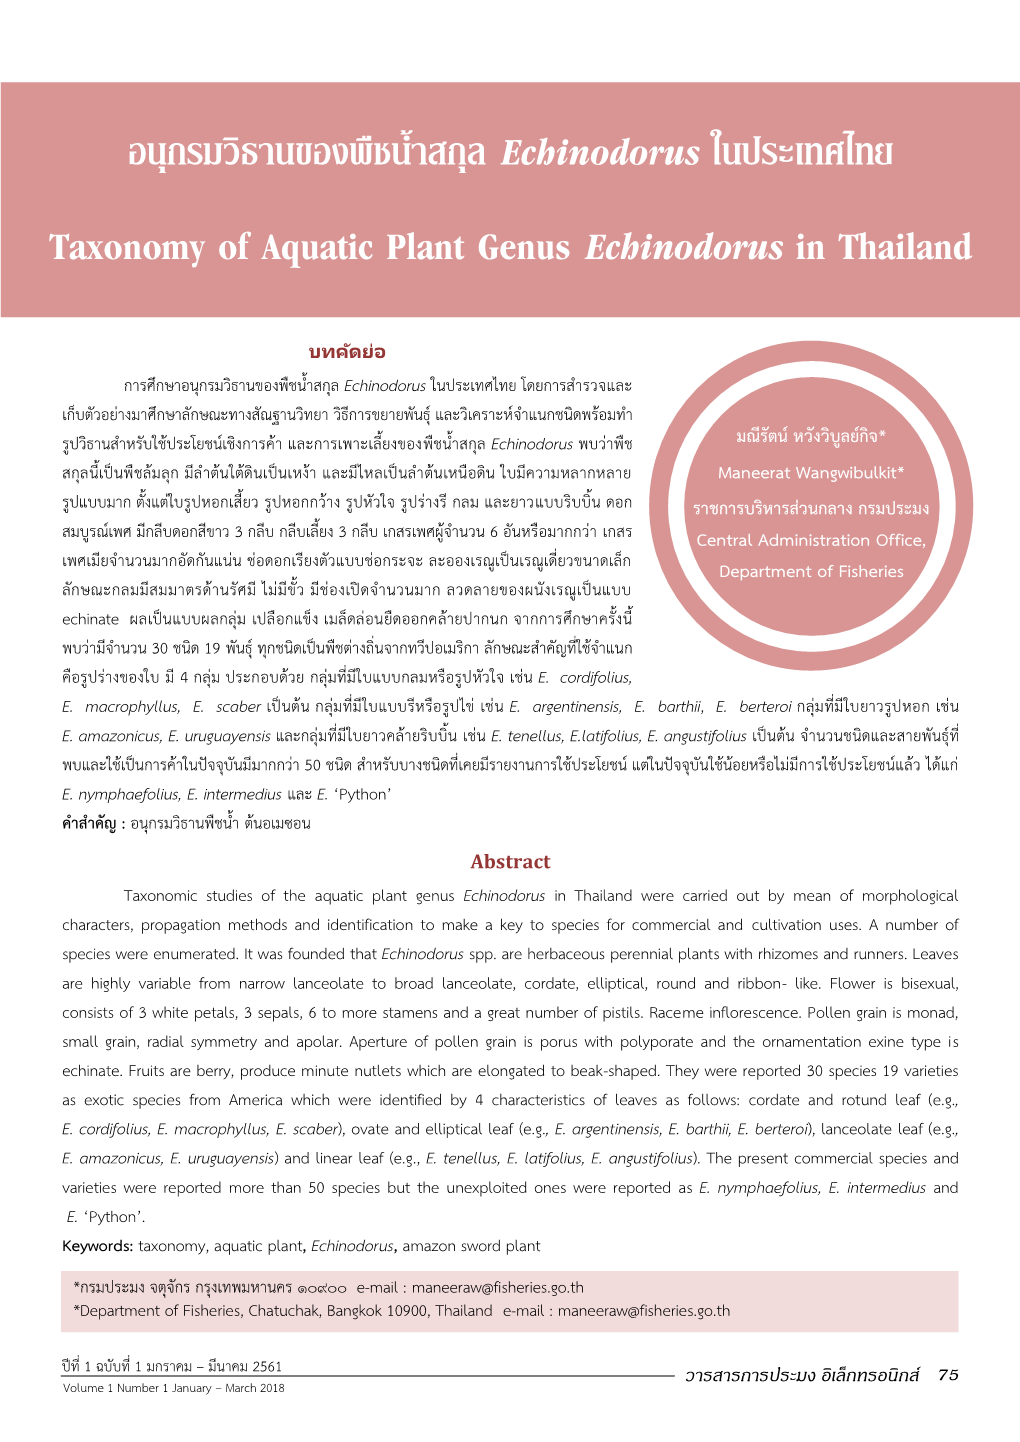 อนุกรมวิธานของพืชน้าสกุล Echinodorus ในประเทศไทย Taxonomy